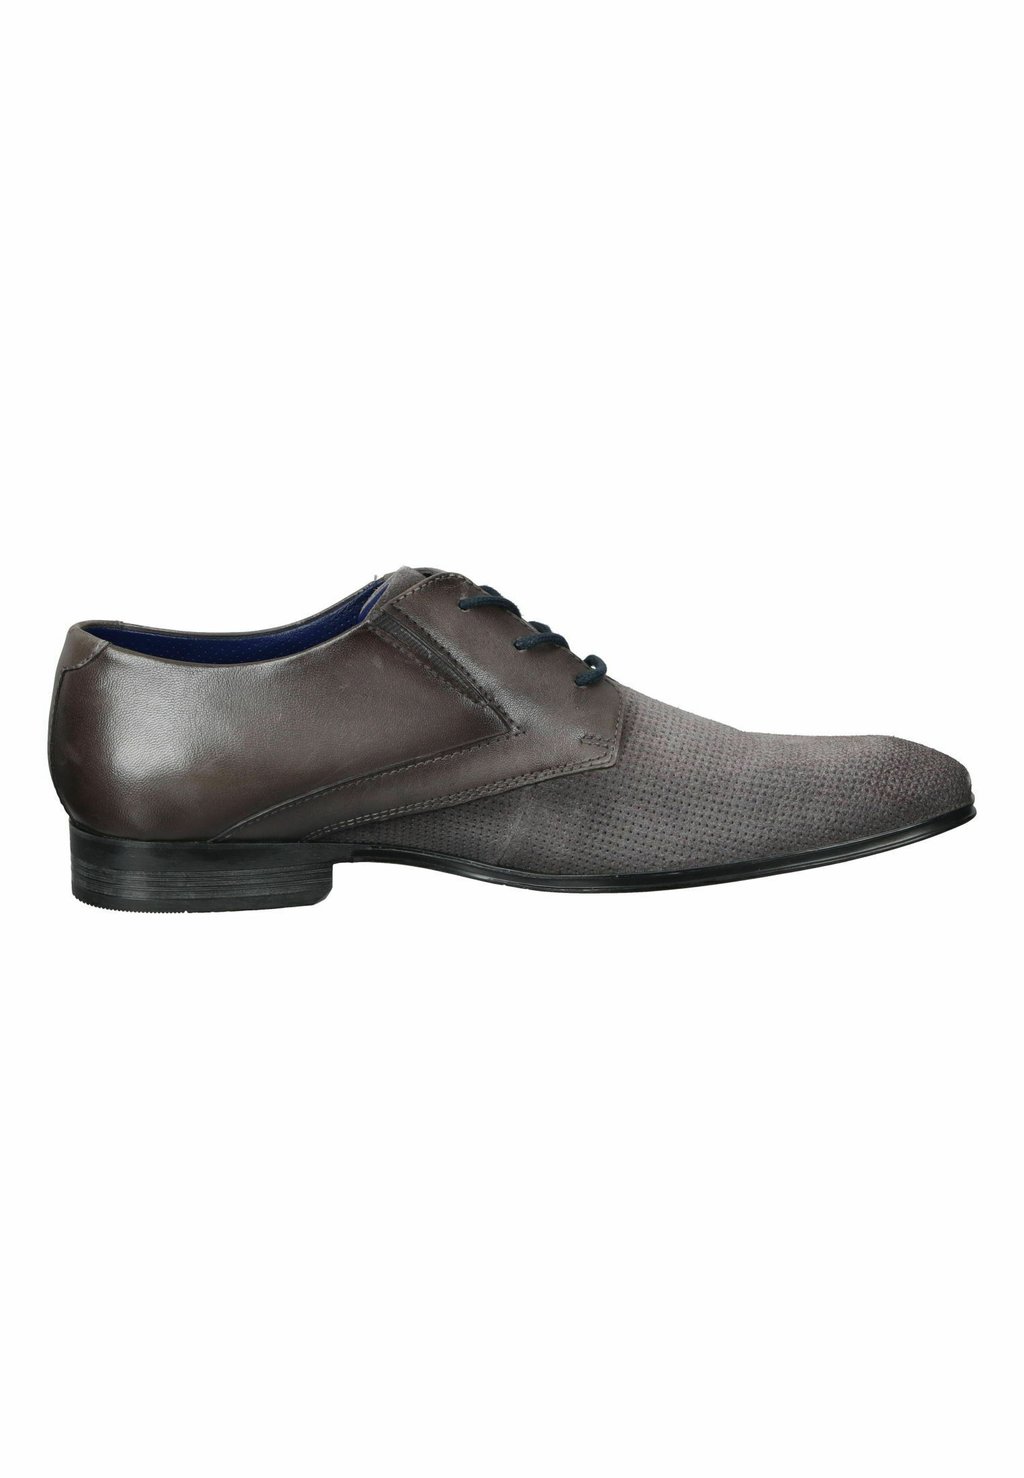 Деловые туфли на шнуровке bugatti, цвет grau деловые туфли на шнуровке bugatti цвет black